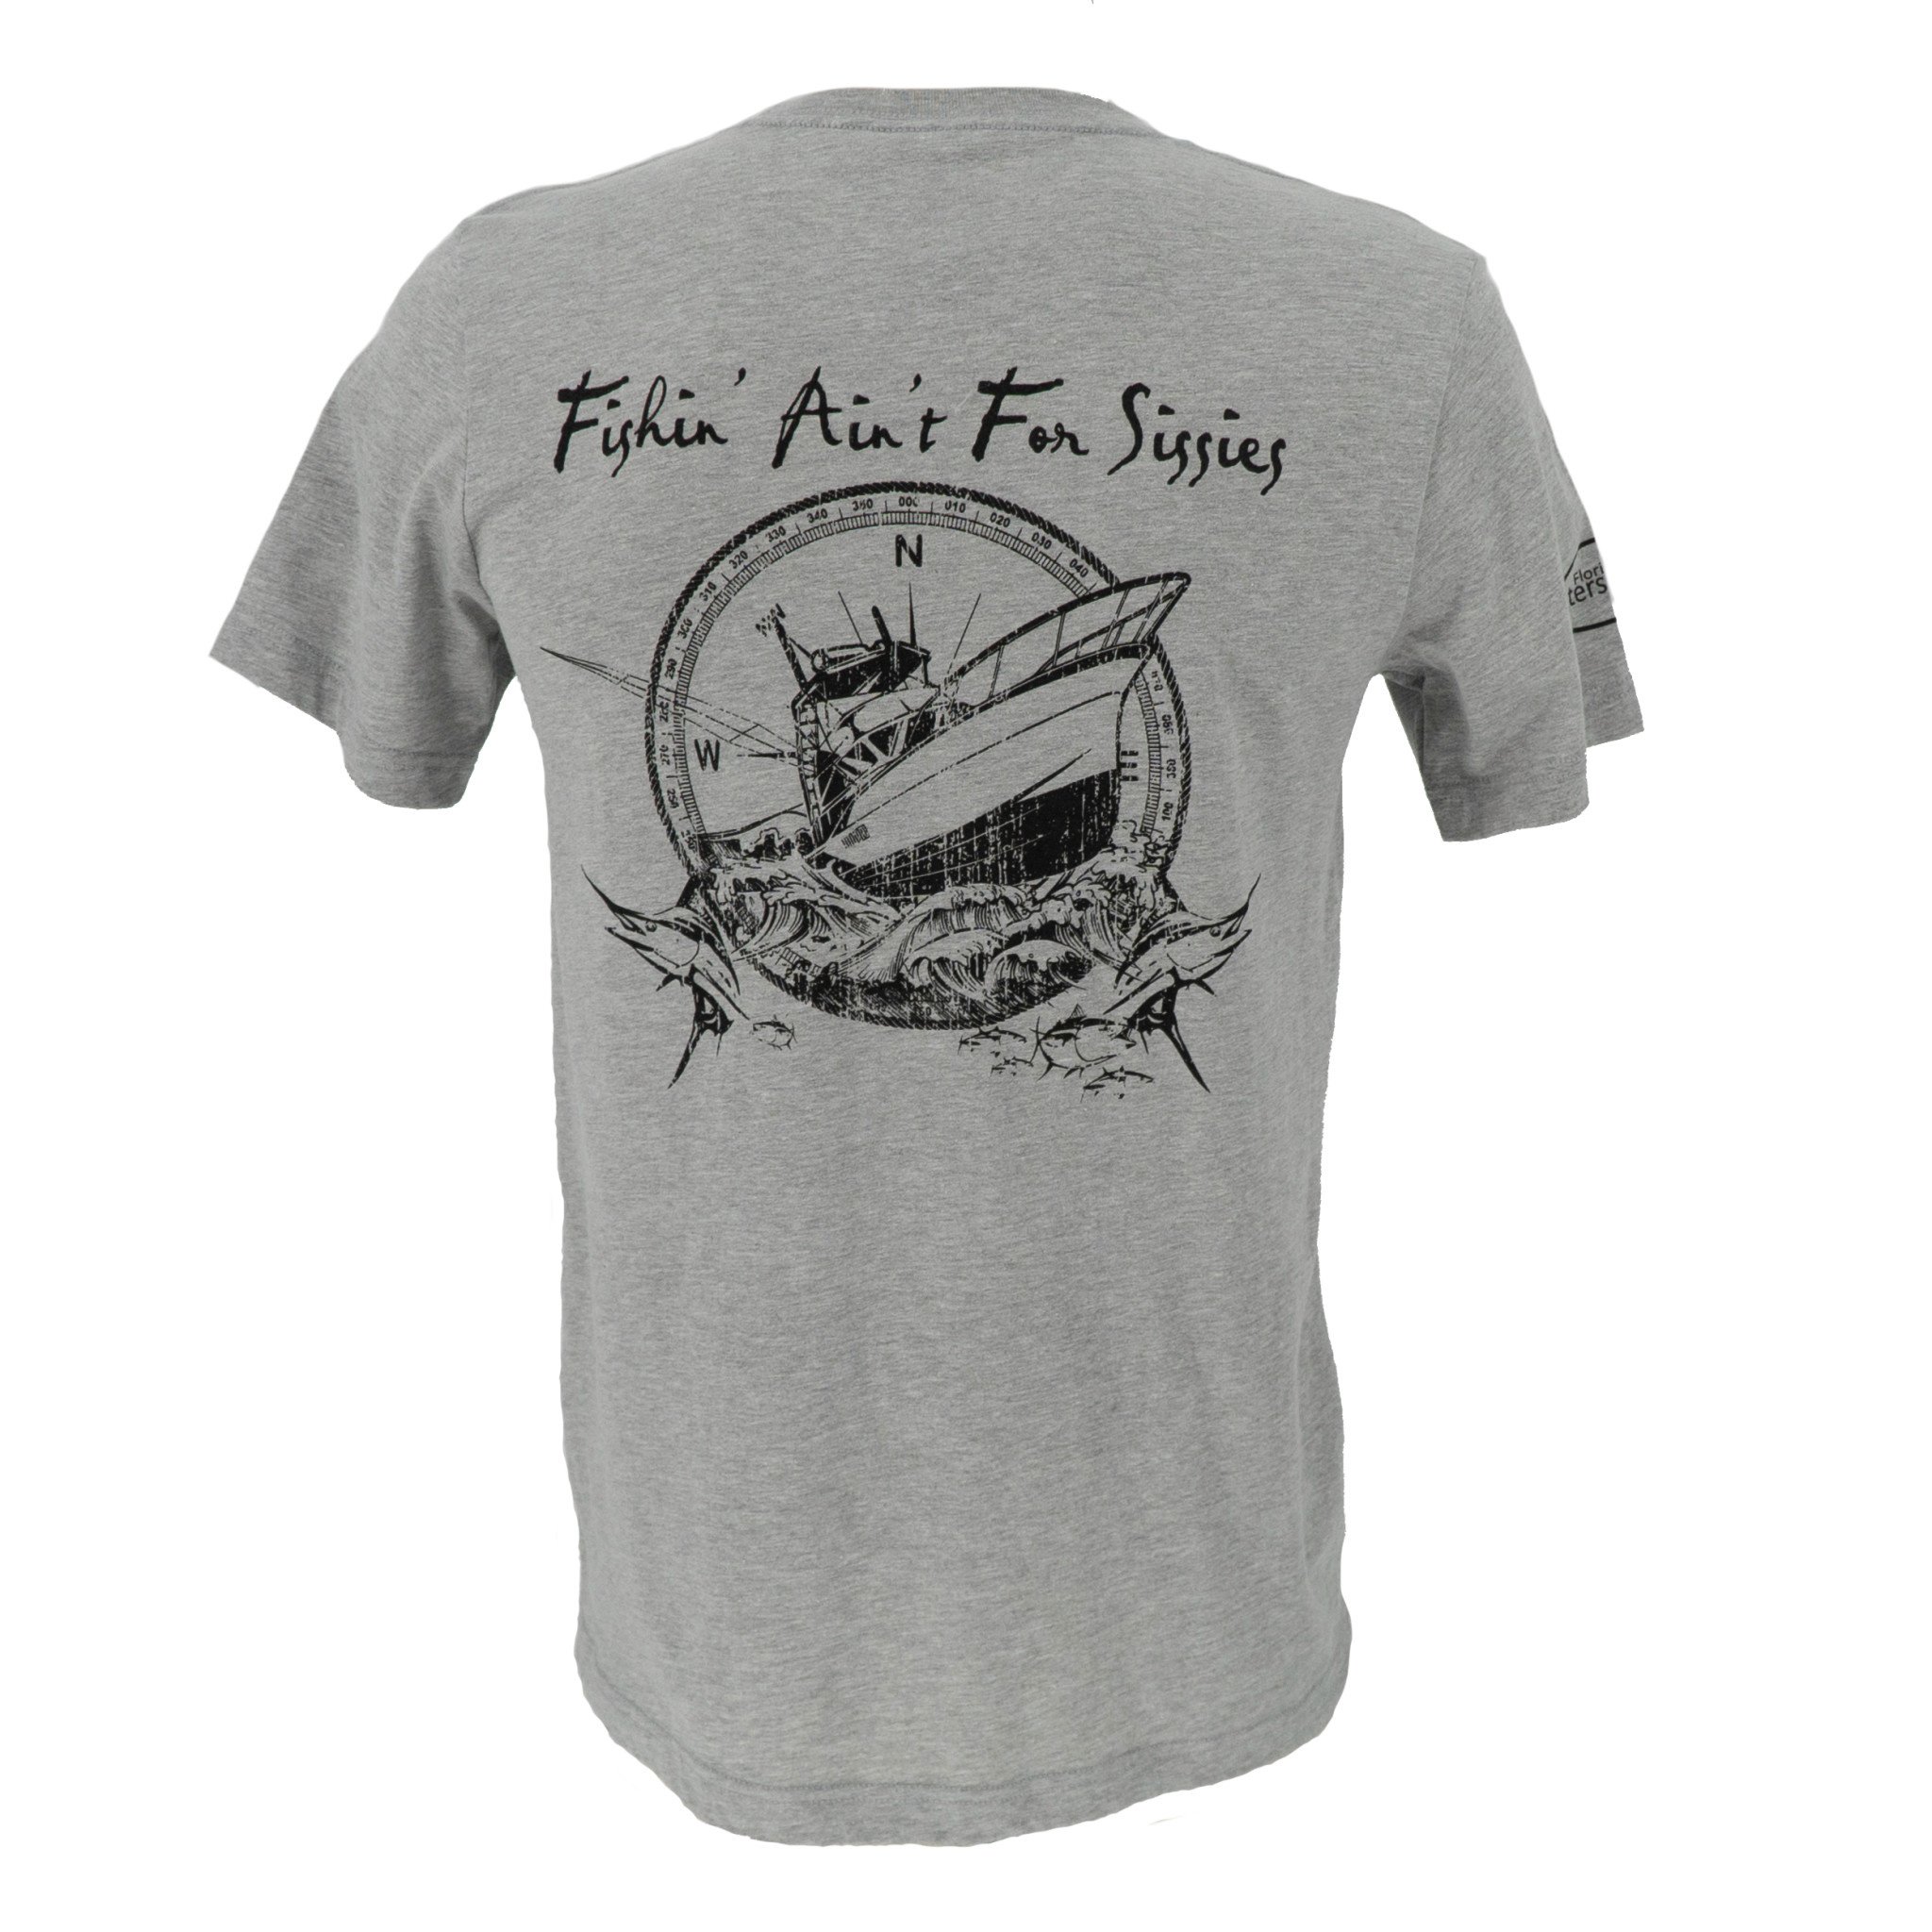 Sportfish T-Shirt - Men's - Florida Watersports